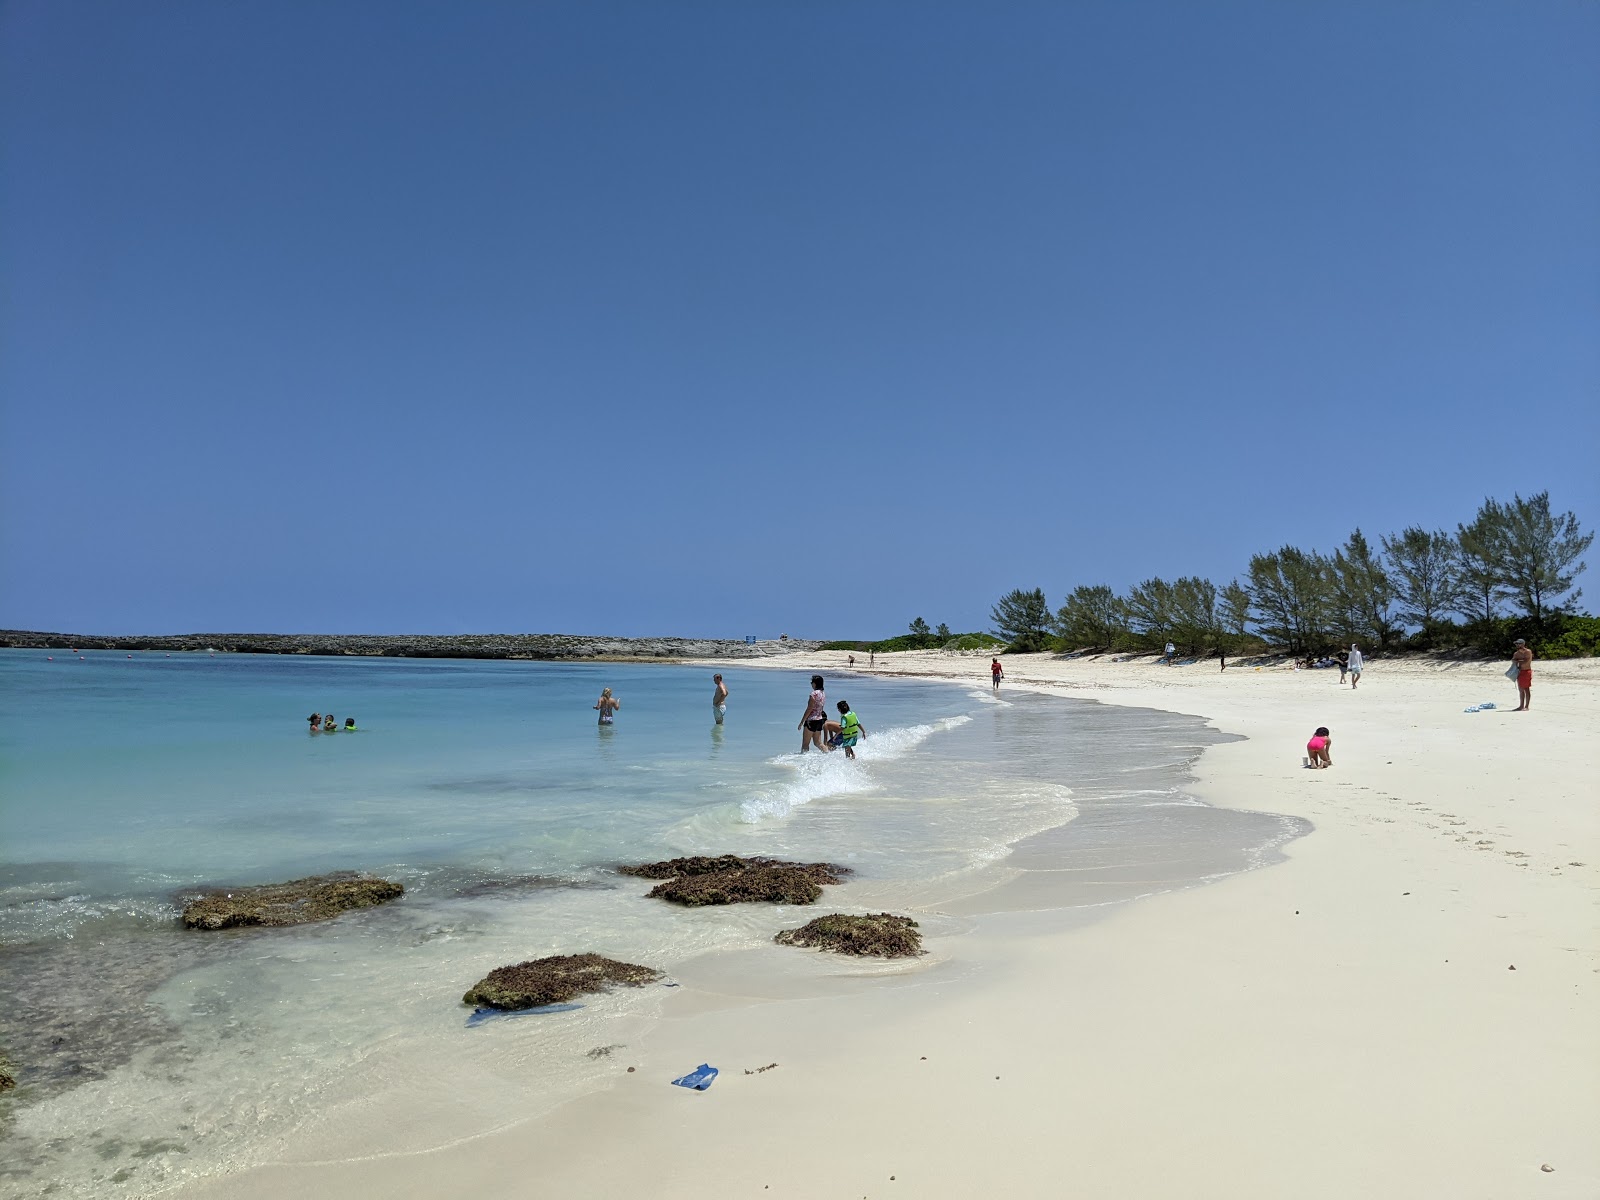 Foto de Paradise beach - recomendado para viajantes em família com crianças